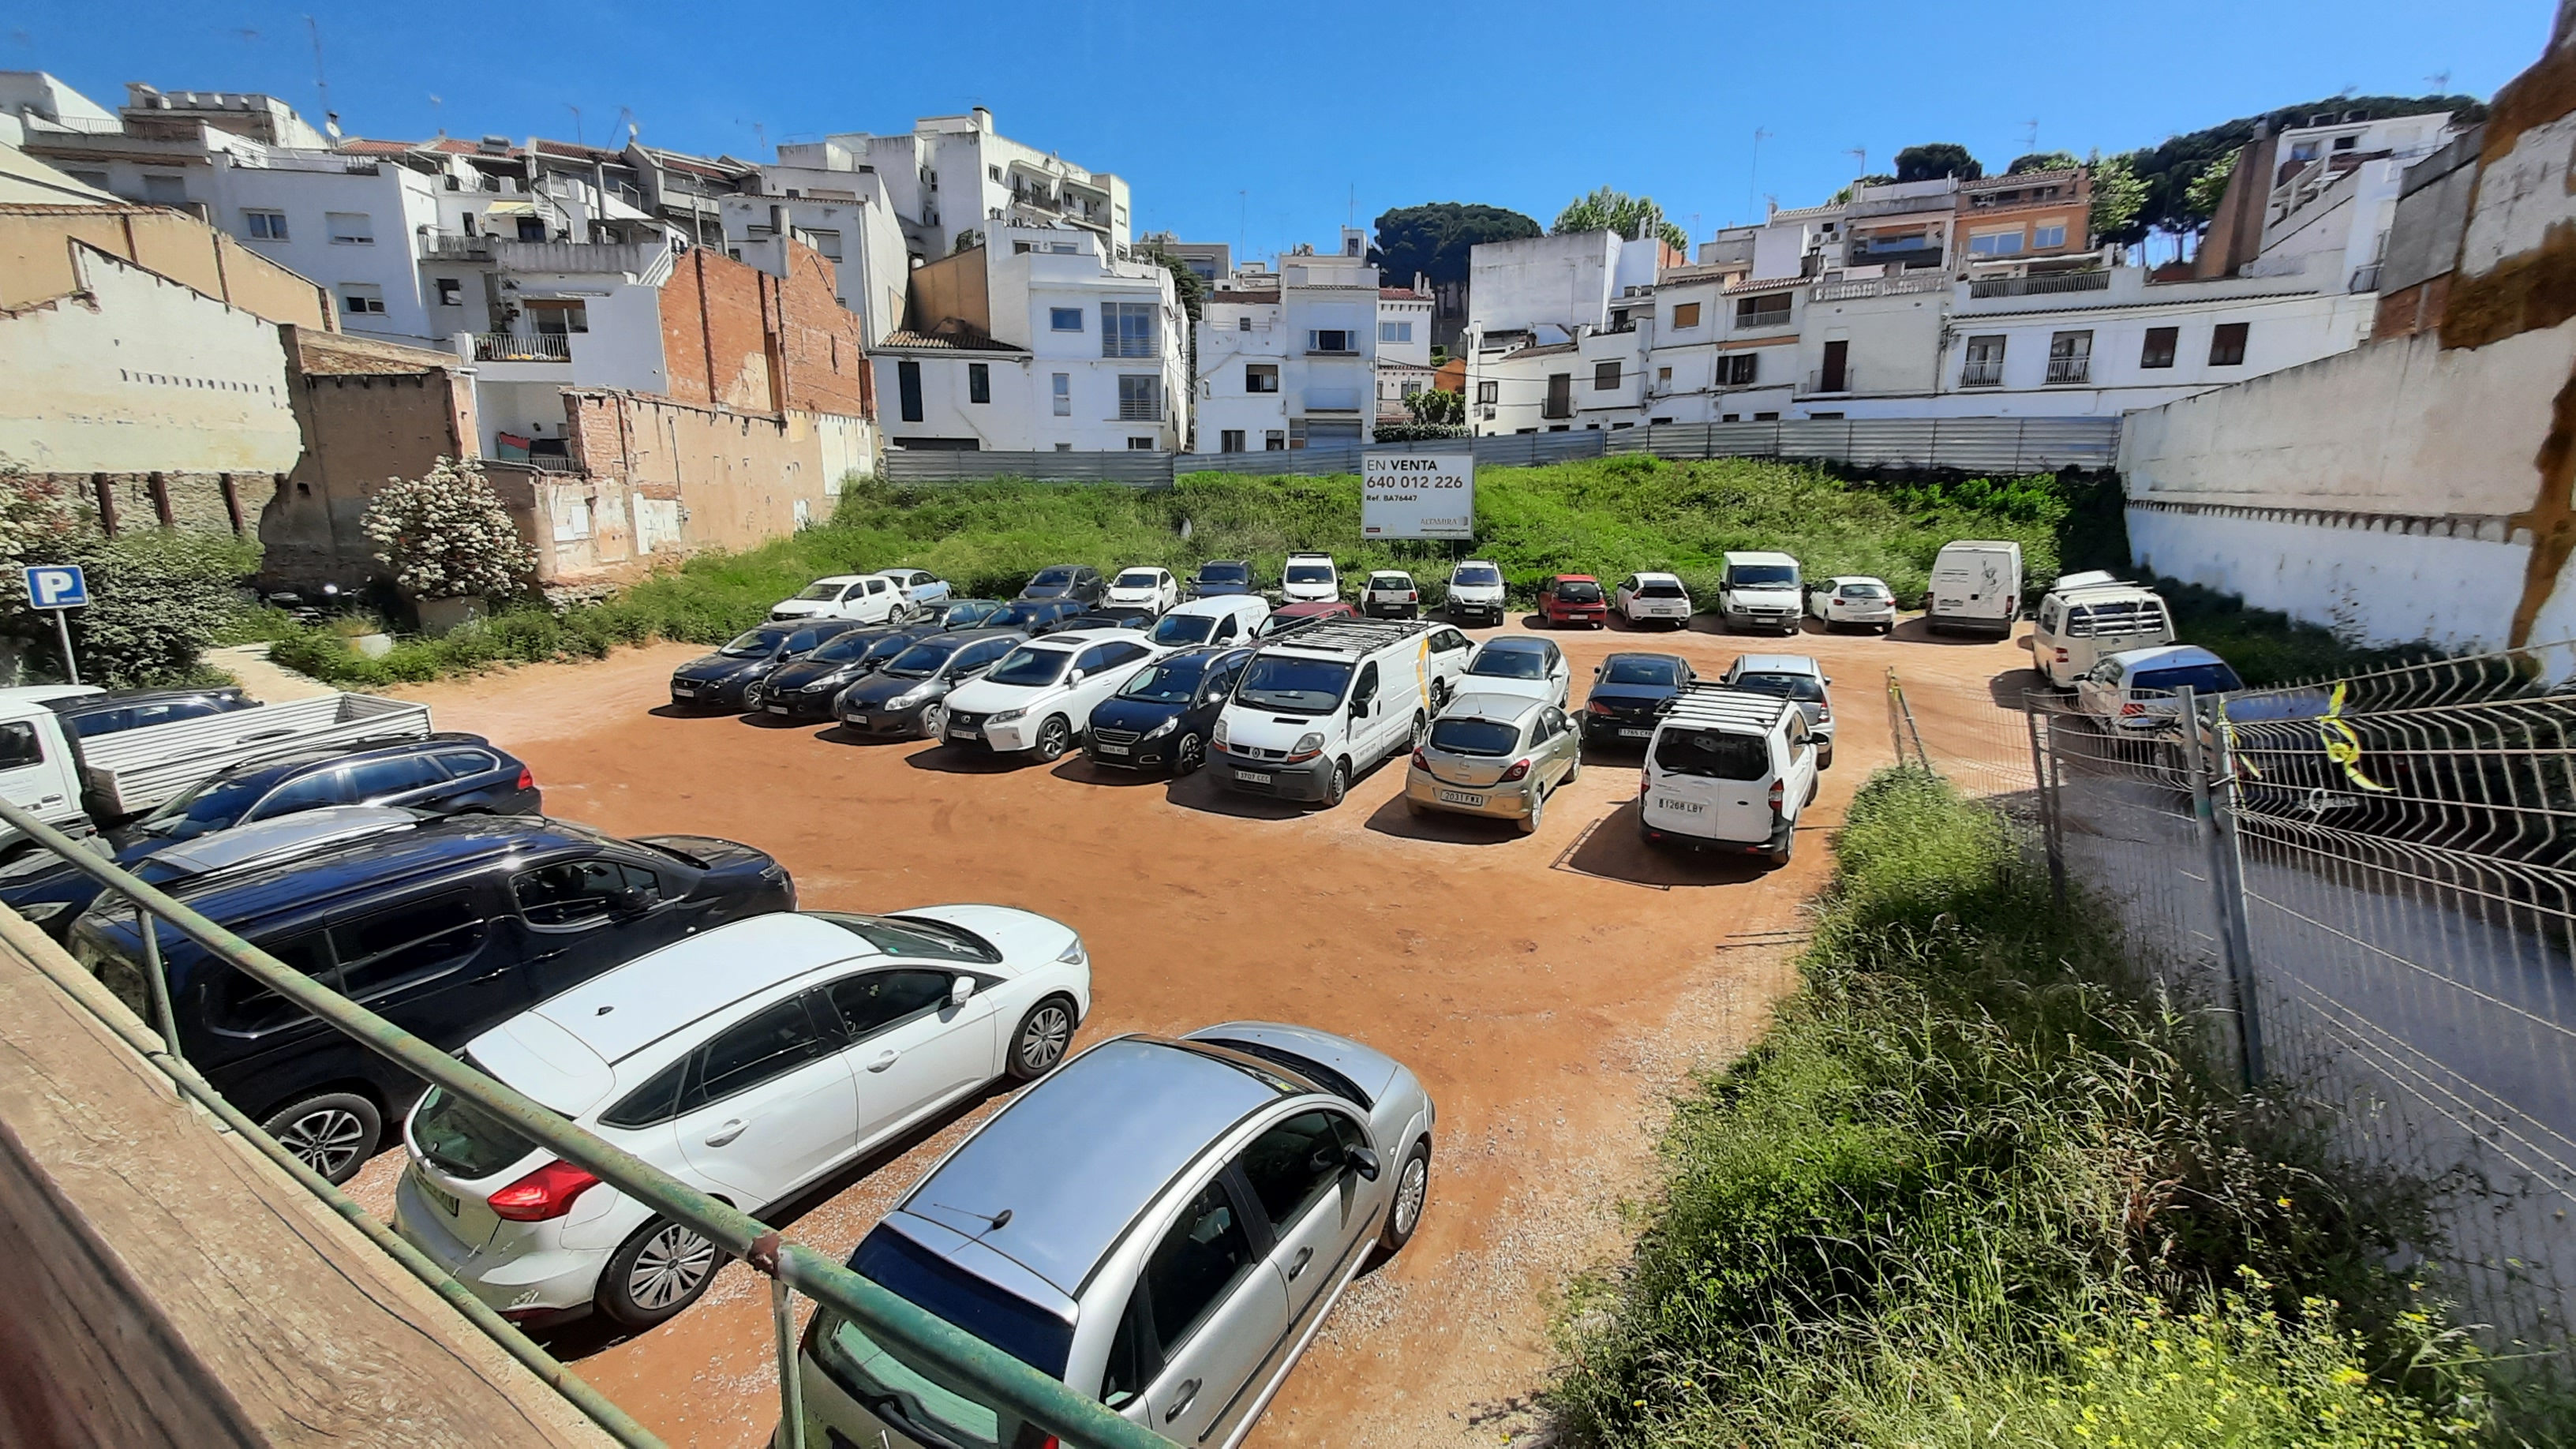 El solar dels Tints deixarà de ser un aparcament públic a partir del 9 de maig per l'inici de les obres d'urbanització